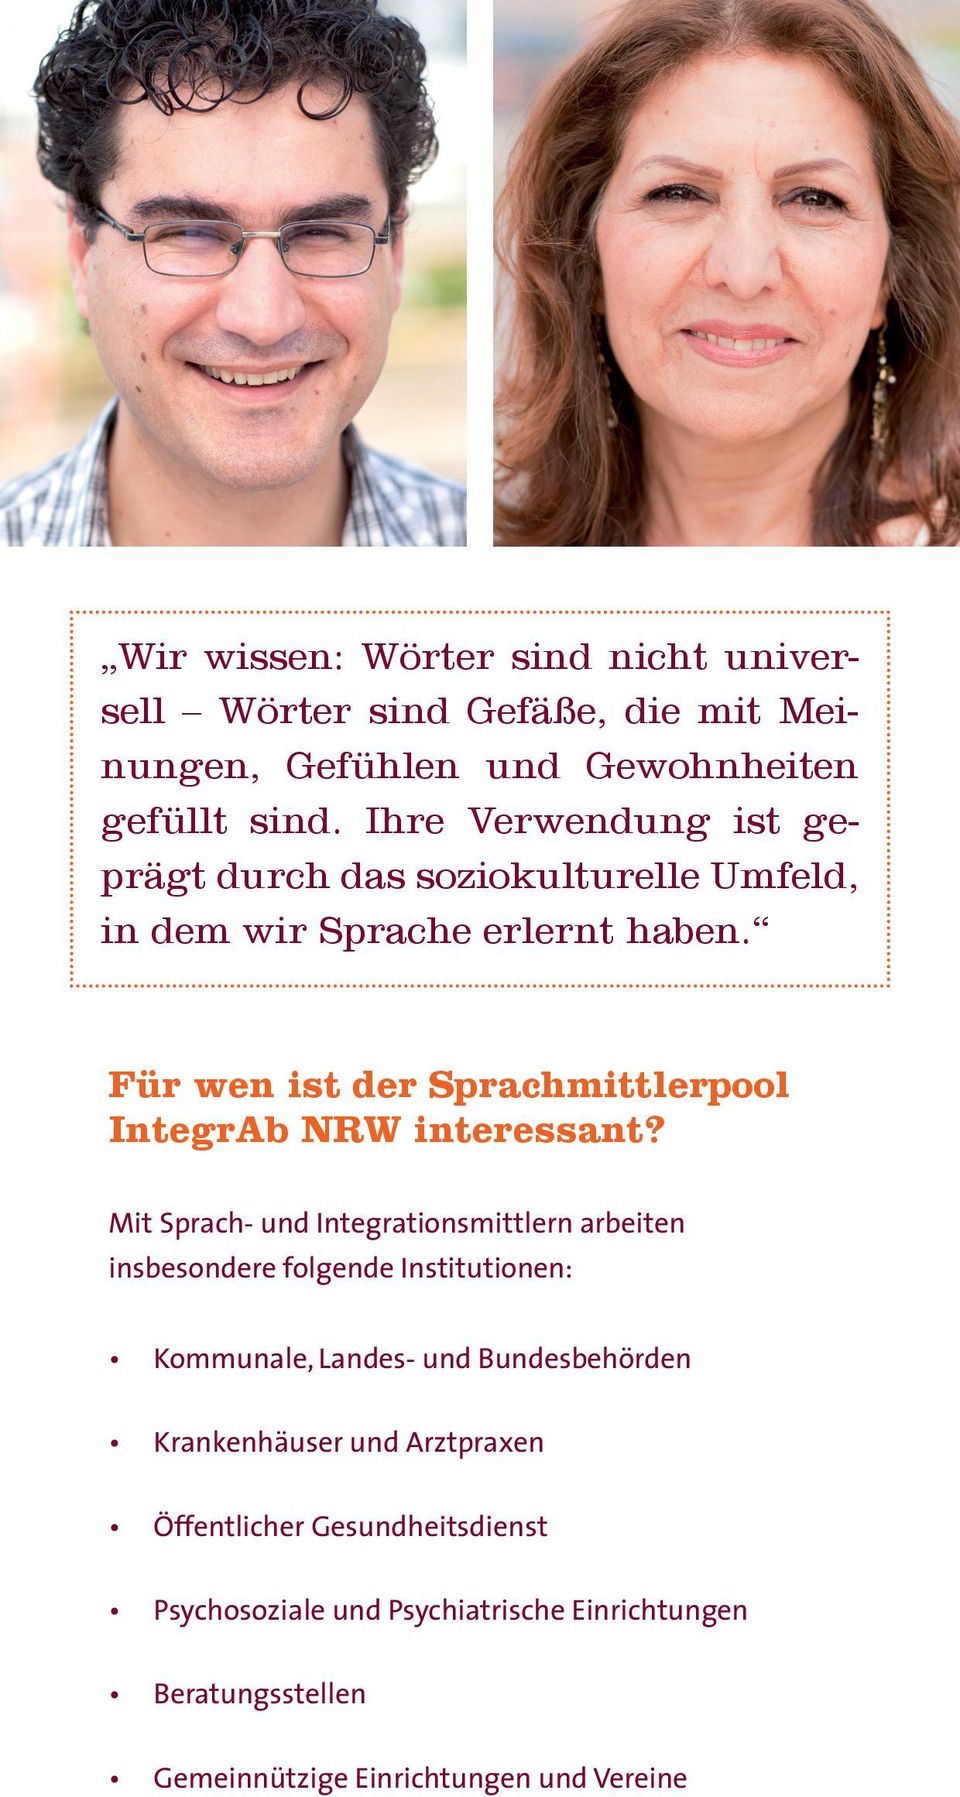 Für wen ist der Sprachmittlerpool IntegrAb NRW interessant?